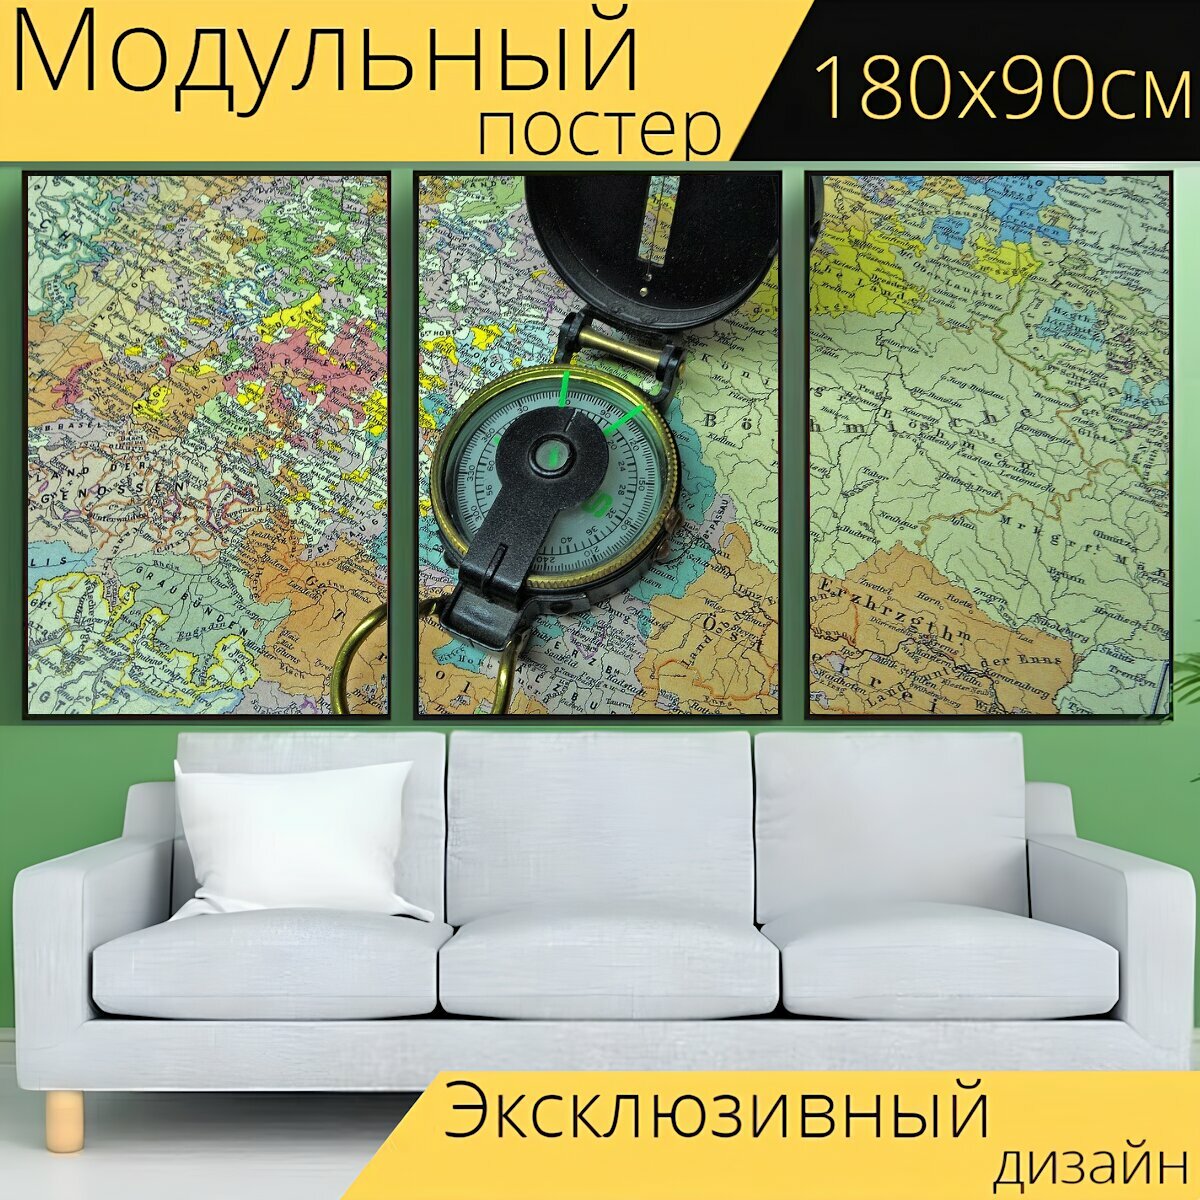 Модульный постер "Компас, карта, навигация" 180 x 90 см. для интерьера